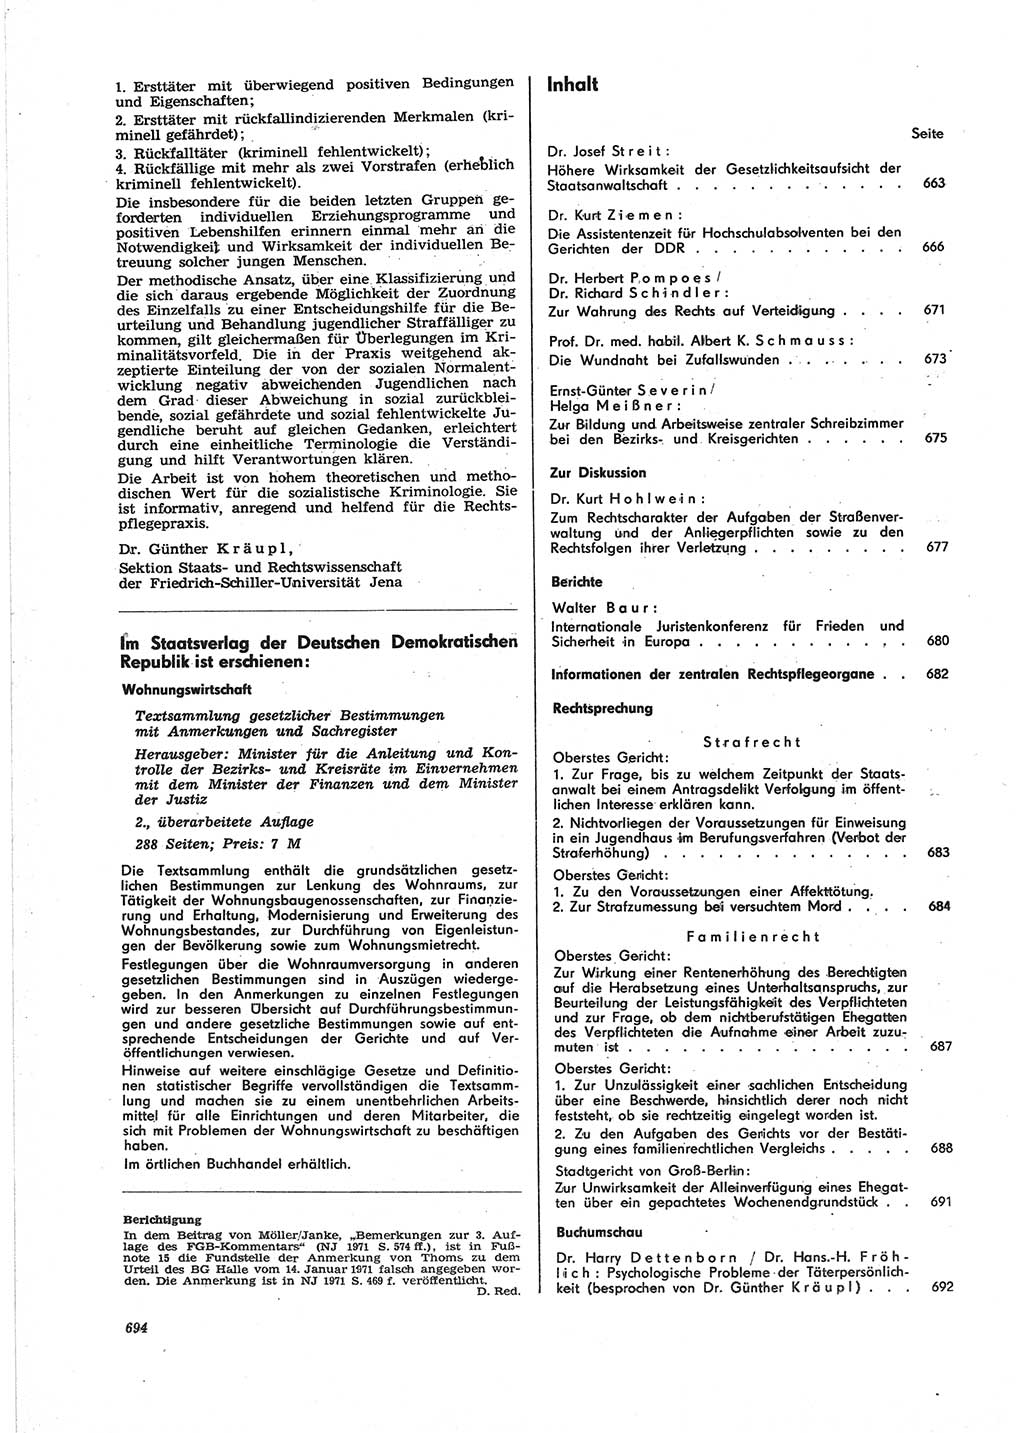 Neue Justiz (NJ), Zeitschrift für Recht und Rechtswissenschaft [Deutsche Demokratische Republik (DDR)], 25. Jahrgang 1971, Seite 694 (NJ DDR 1971, S. 694)